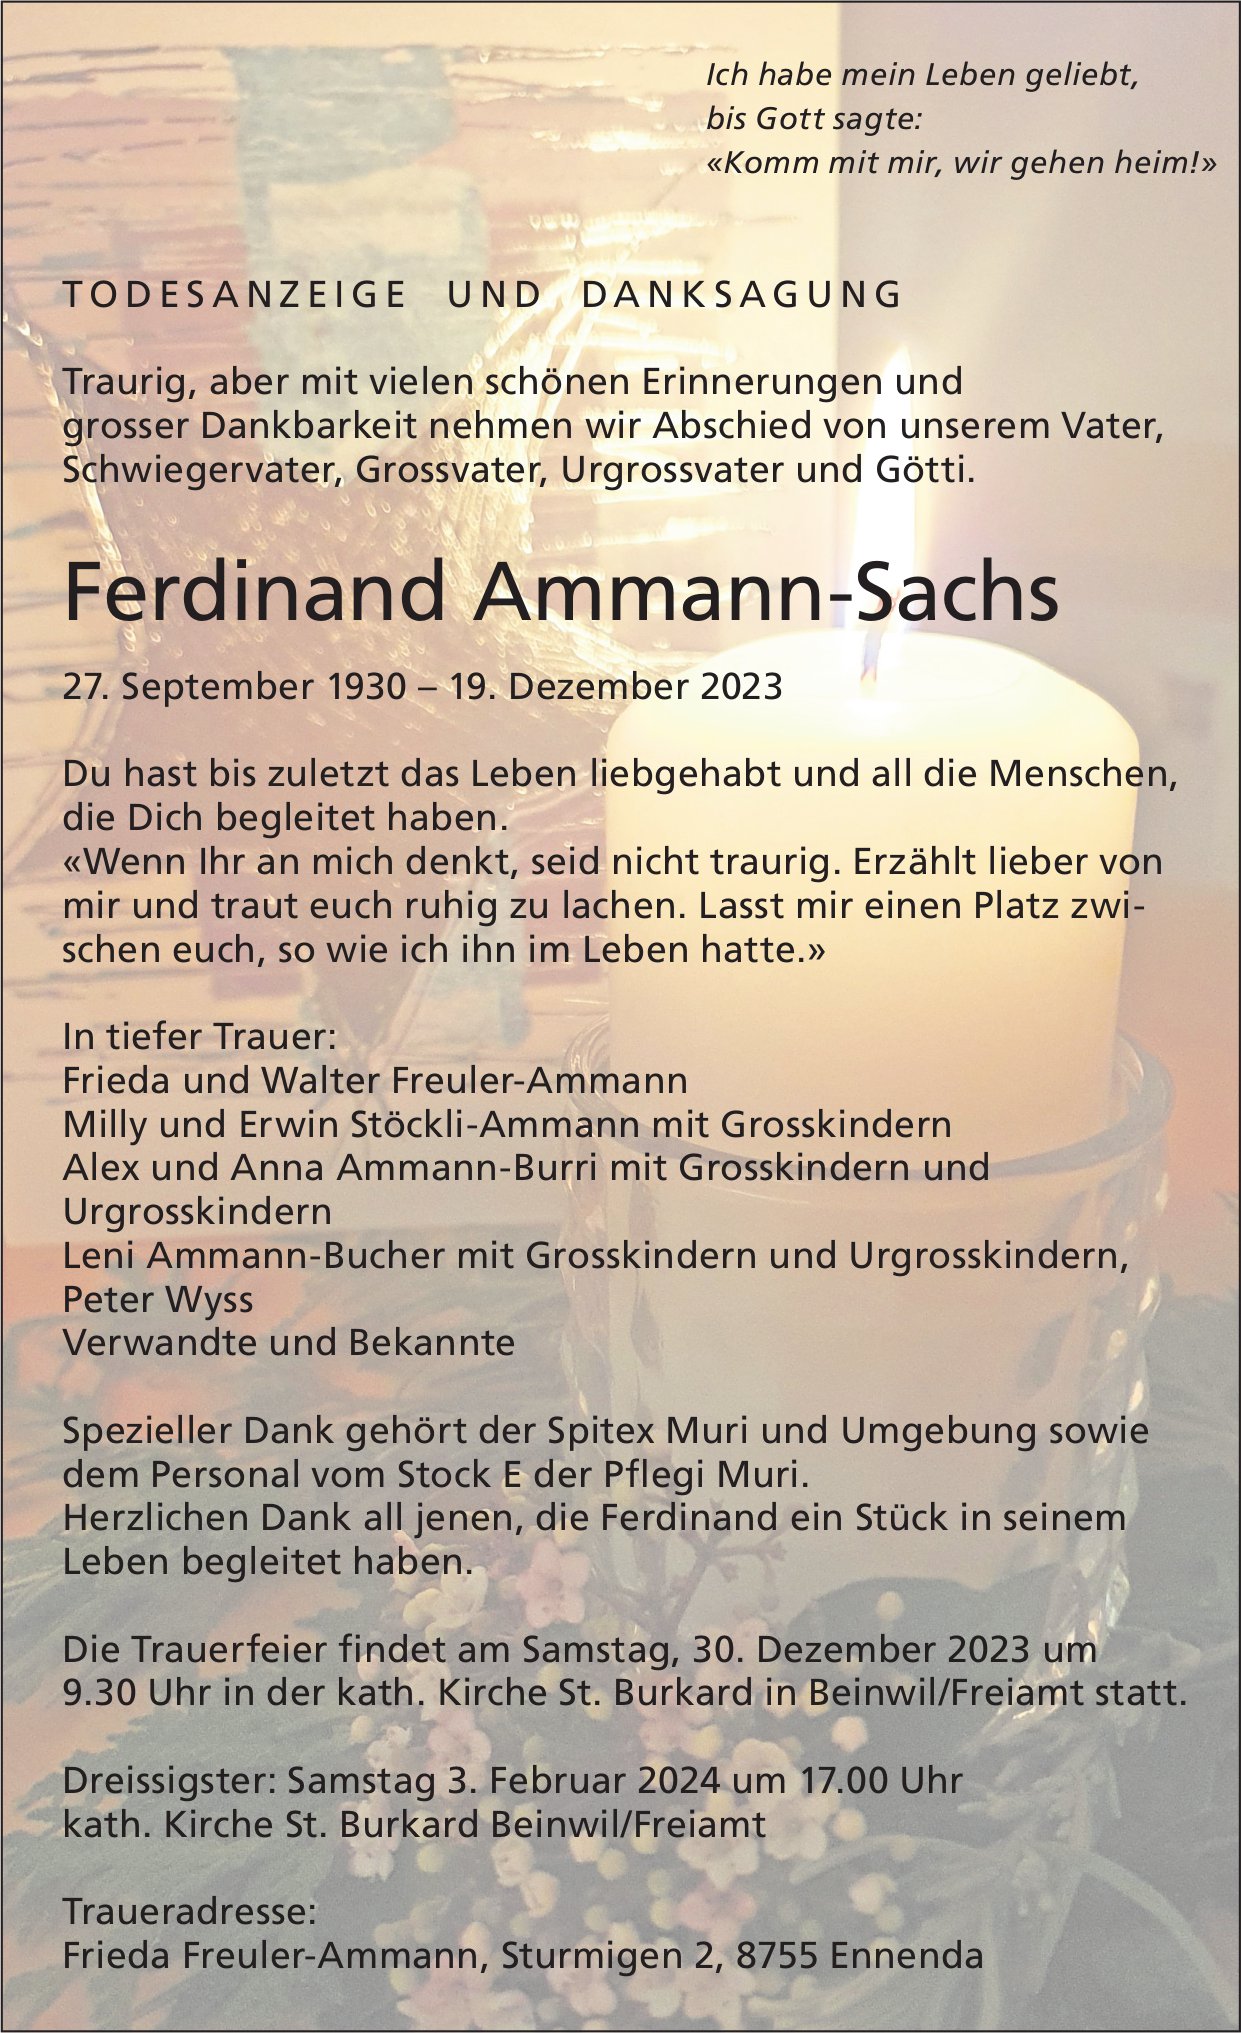 Ammann-Sachs Ferdinand, Dezember 2023 / TA